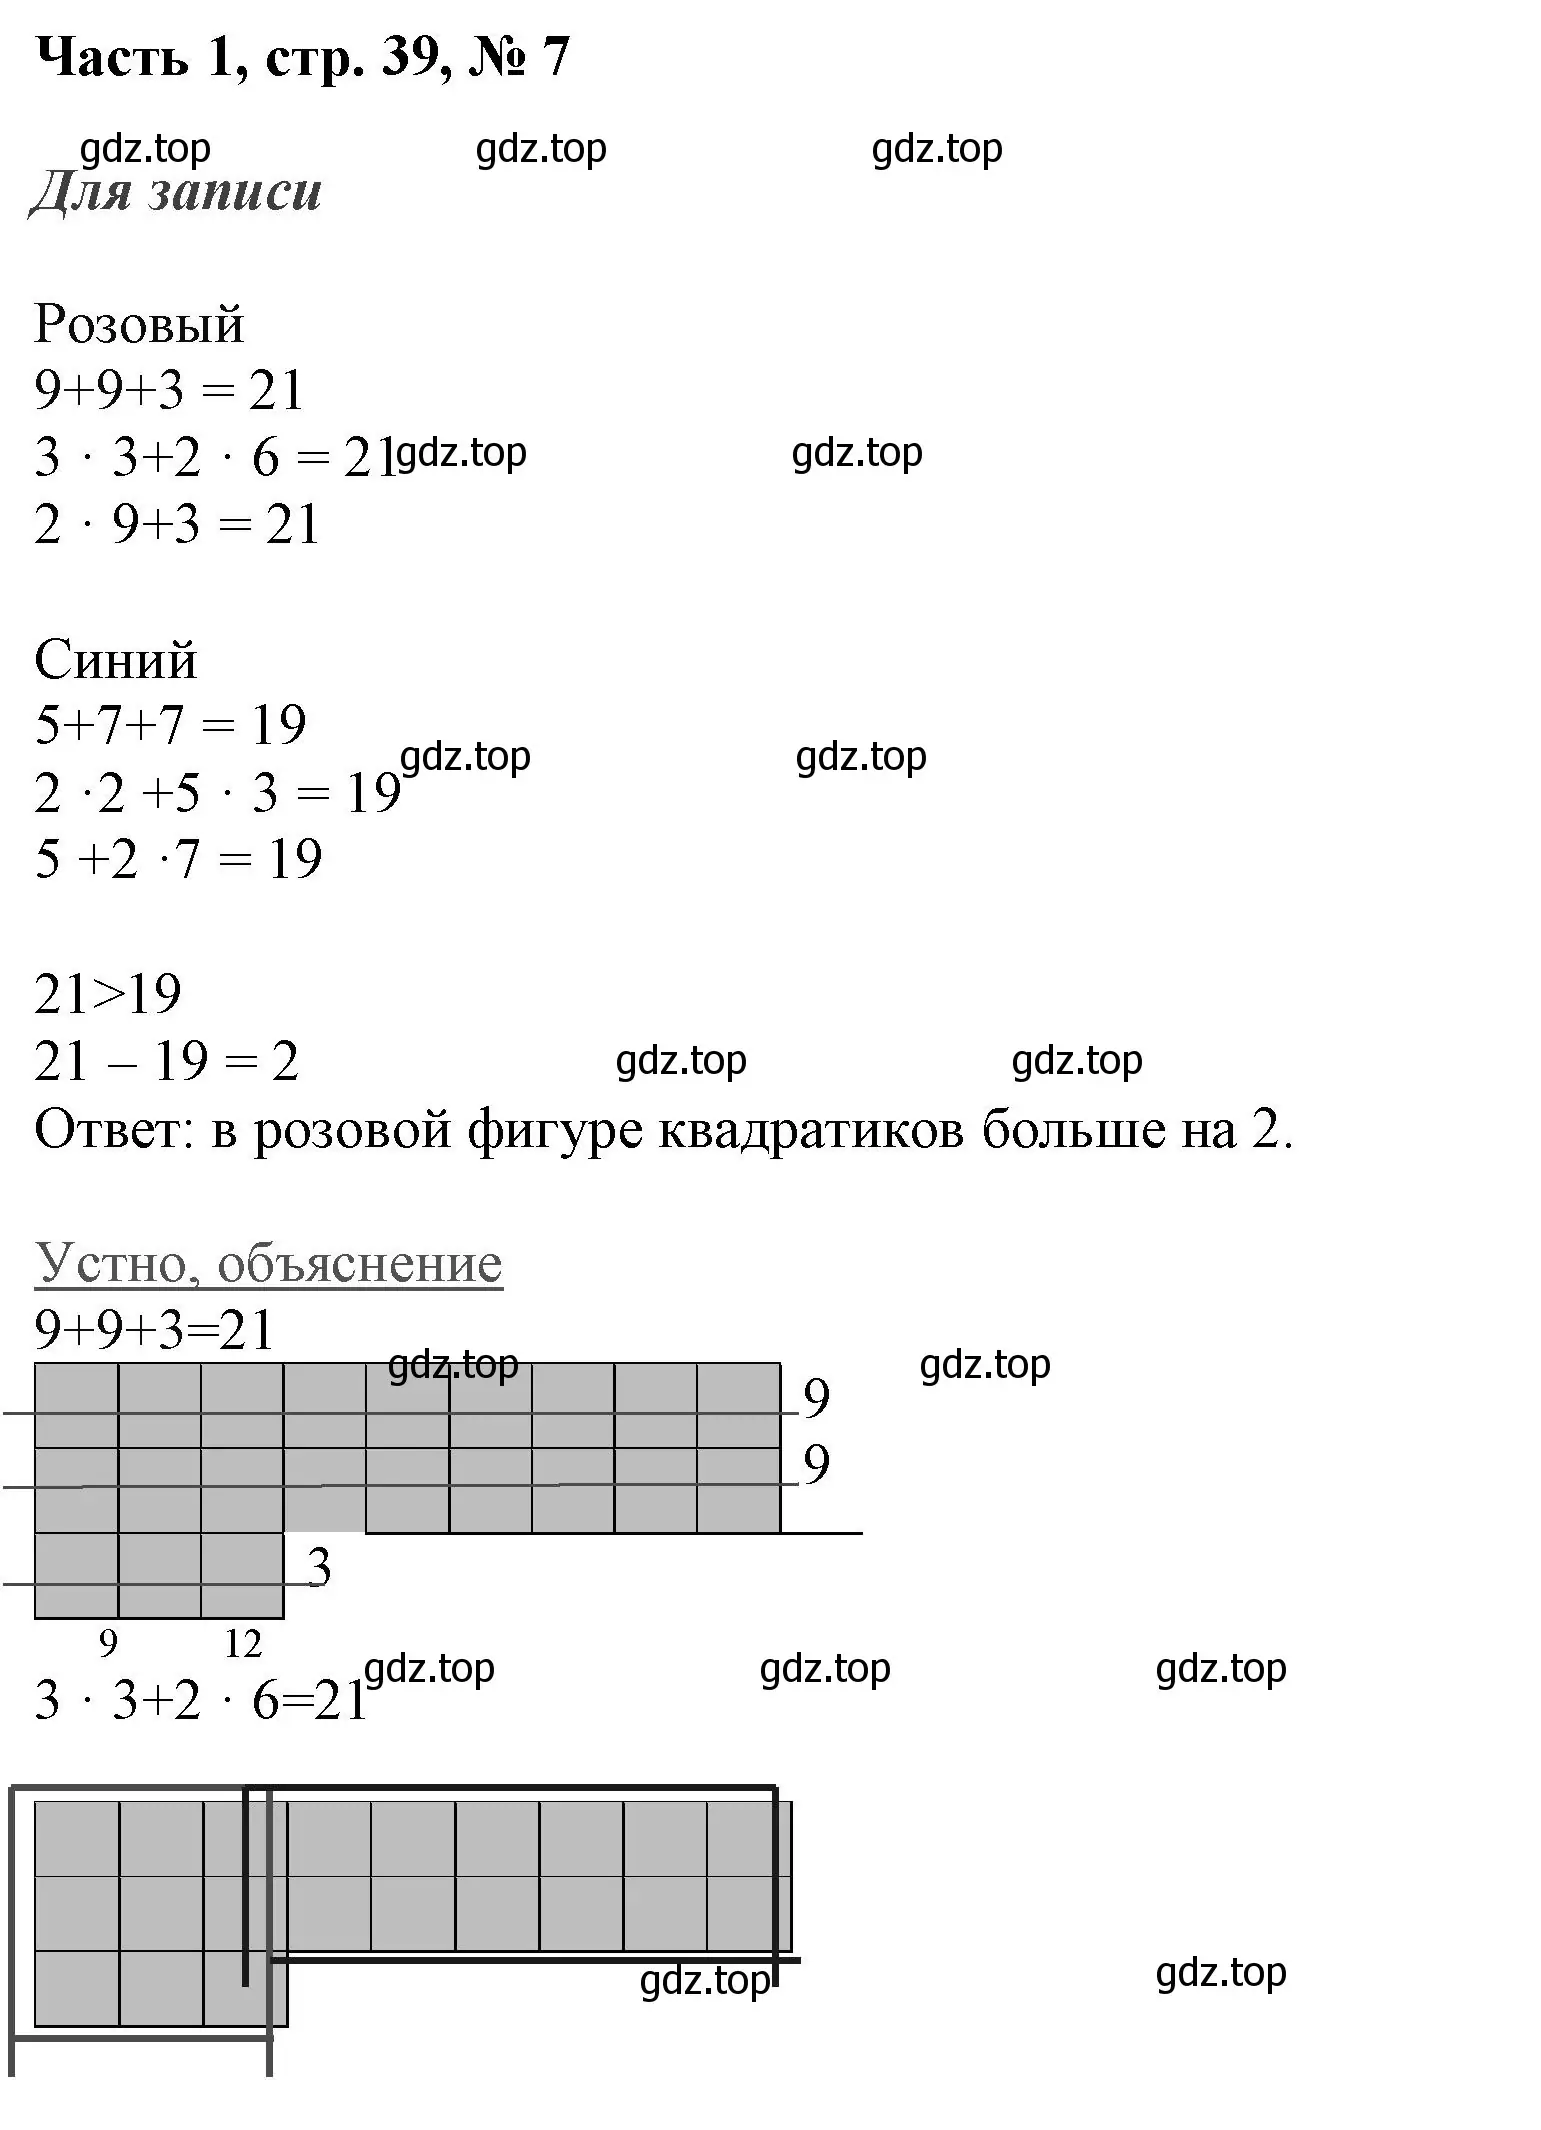 Решение номер 7 (страница 39) гдз по математике 3 класс Моро, Бантова, учебник 1 часть